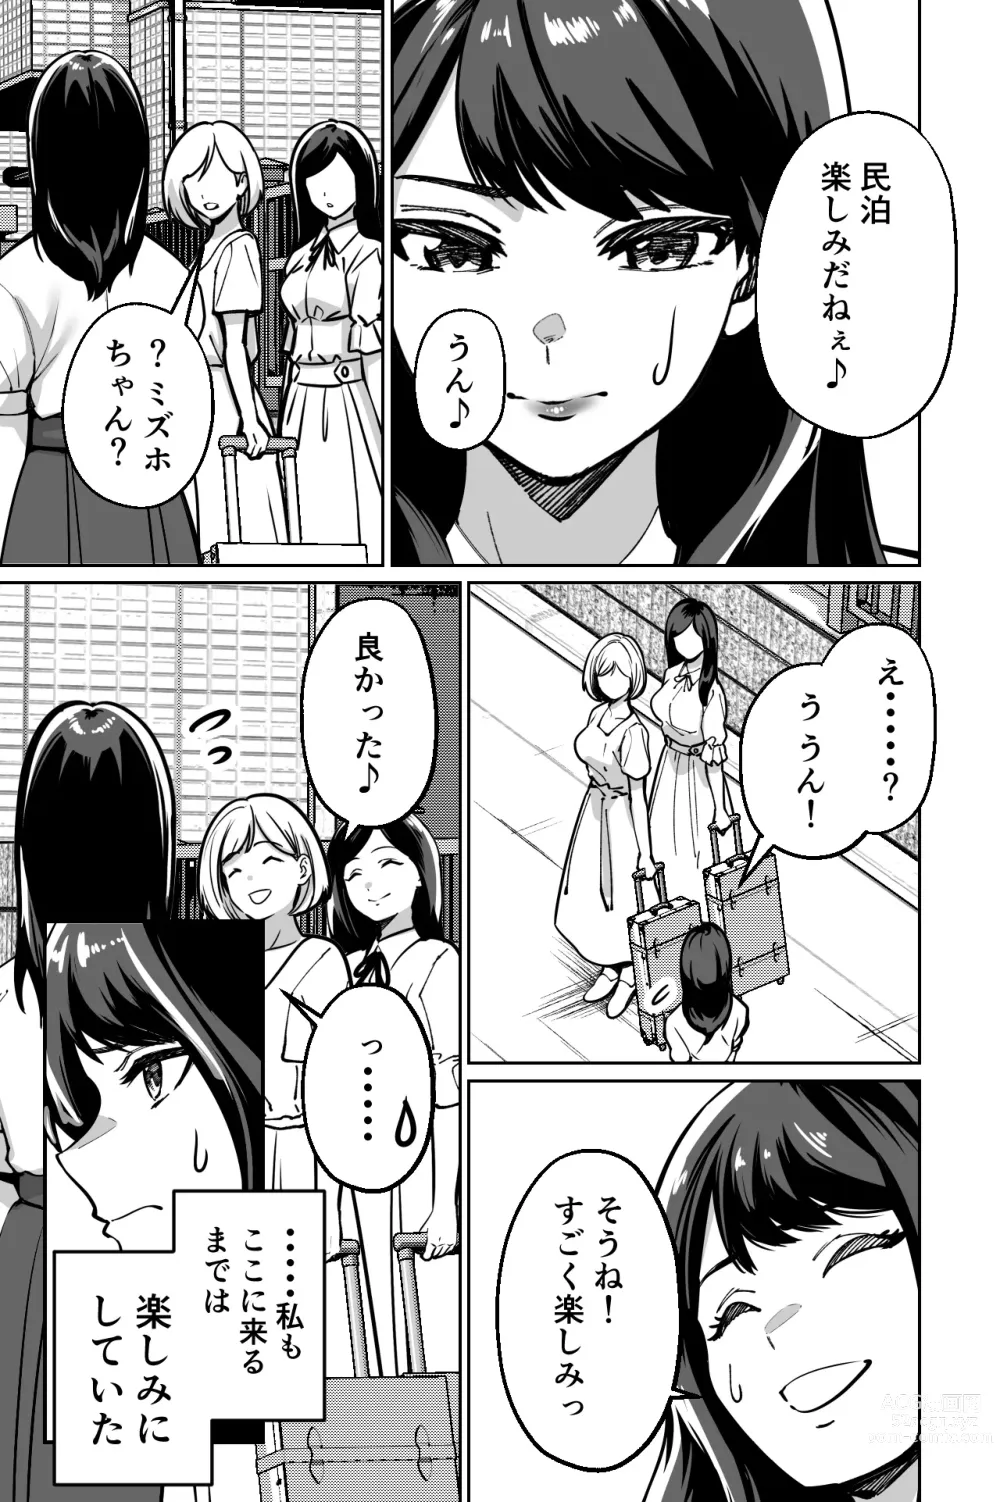 Page 3 of doujinshi Minpaku ~Ojou-sama-tachi wa Minpaku Keieisha no Wana ni Ochiru~